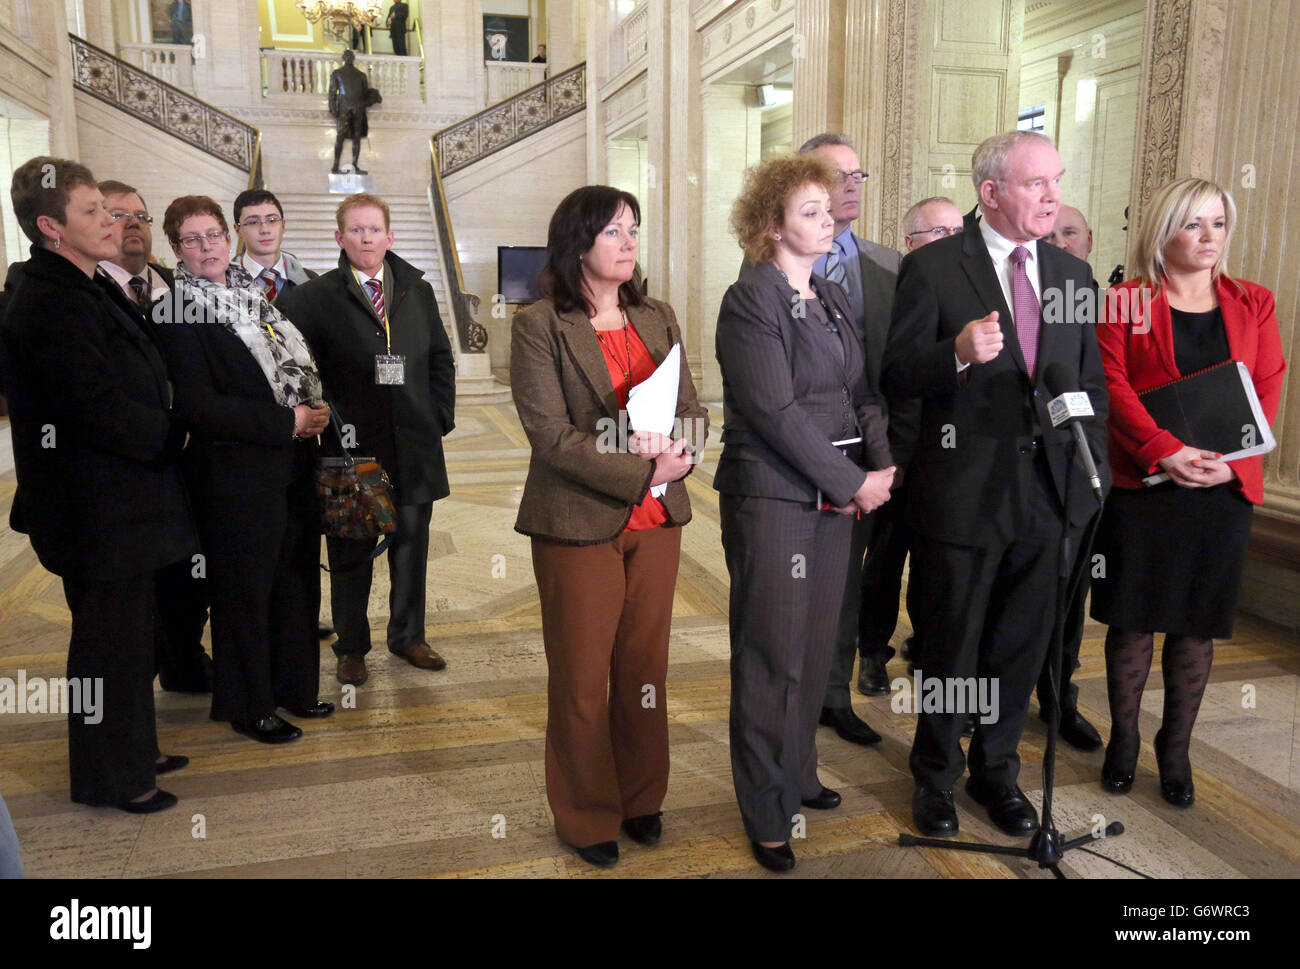 Les familles des victimes écoutent Martin McGuinness et ses collègues du parti Sinn Fein qui ont parlé aux médias, après que l'Assemblée de l'Irlande du Nord ait été rappelée pour débattre de la récente crise de la lettre. Banque D'Images